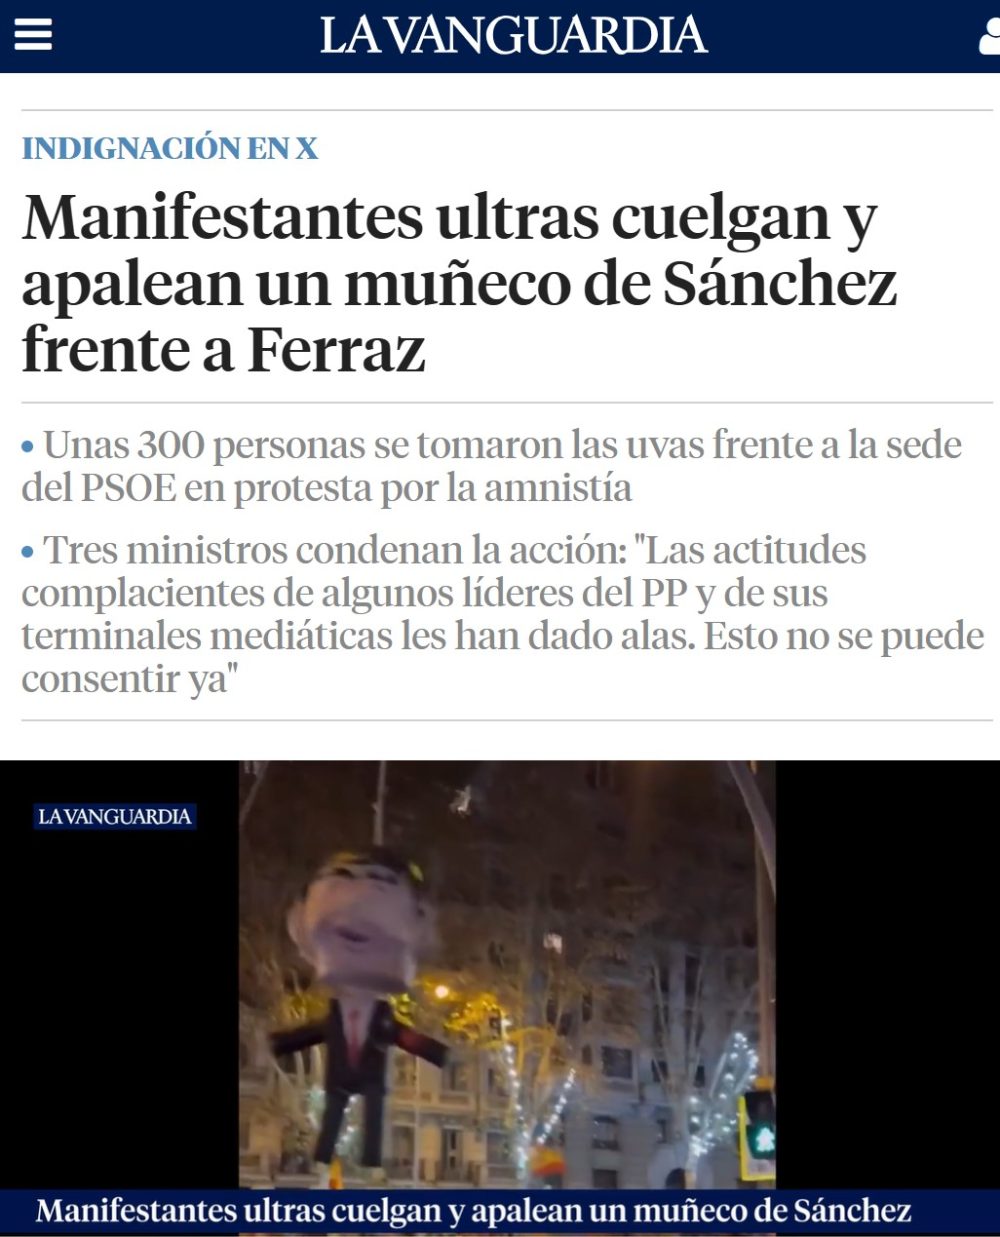 Apalean una piñata de Pedro Sánchez frente a la sede del PSOE